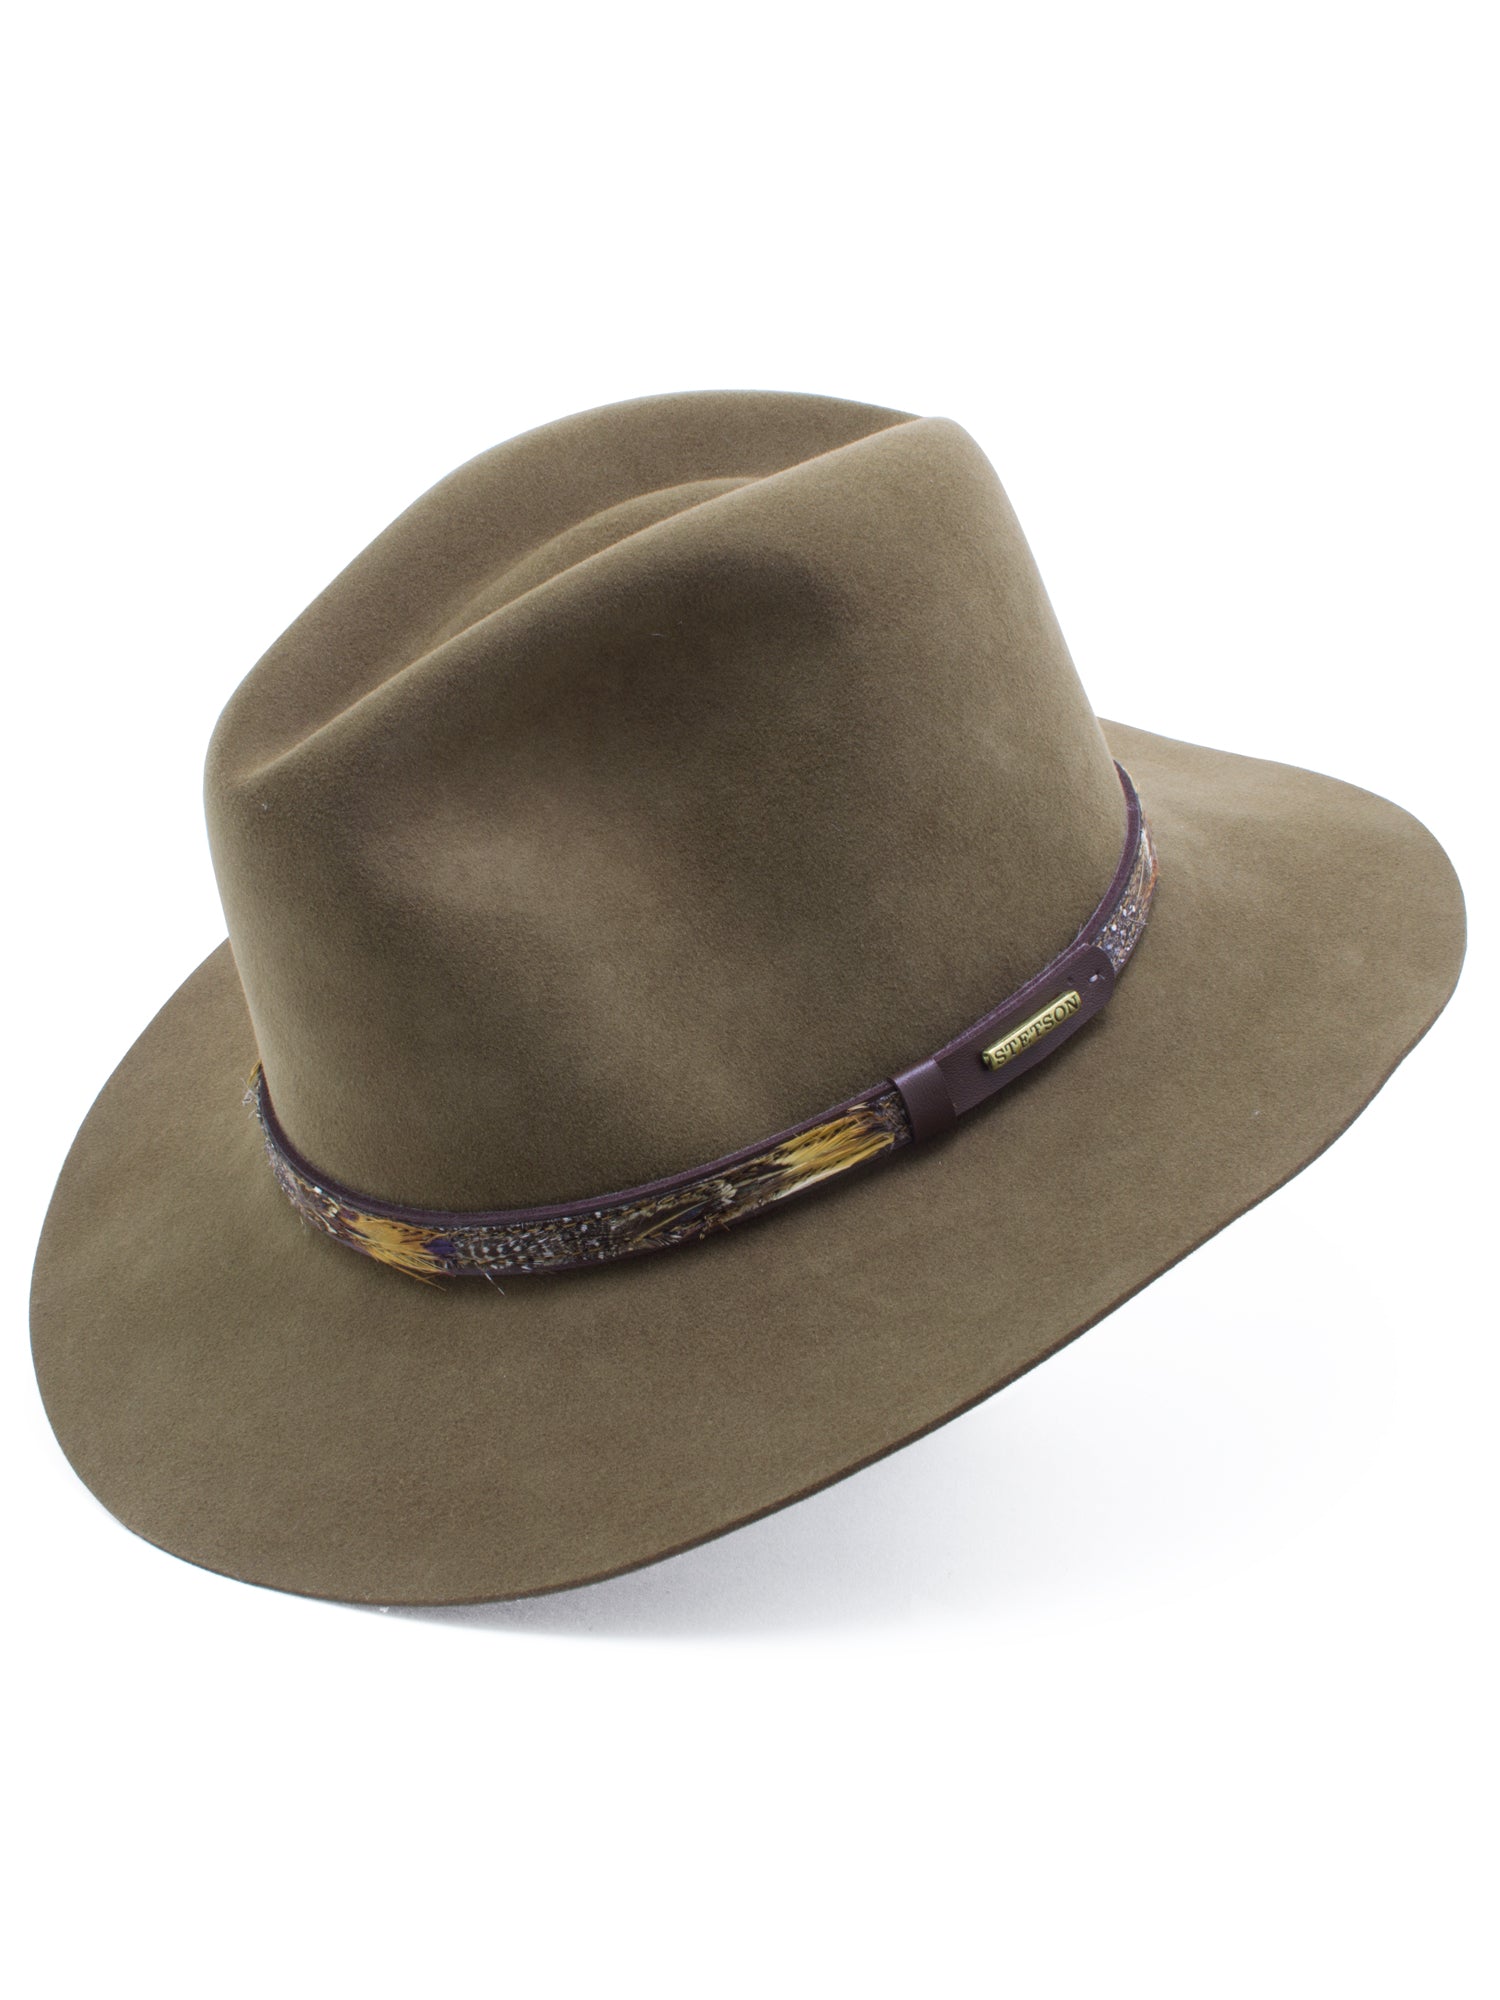 Stetson Fur & Wool Felt 'Jackson' Hat in BRONZE